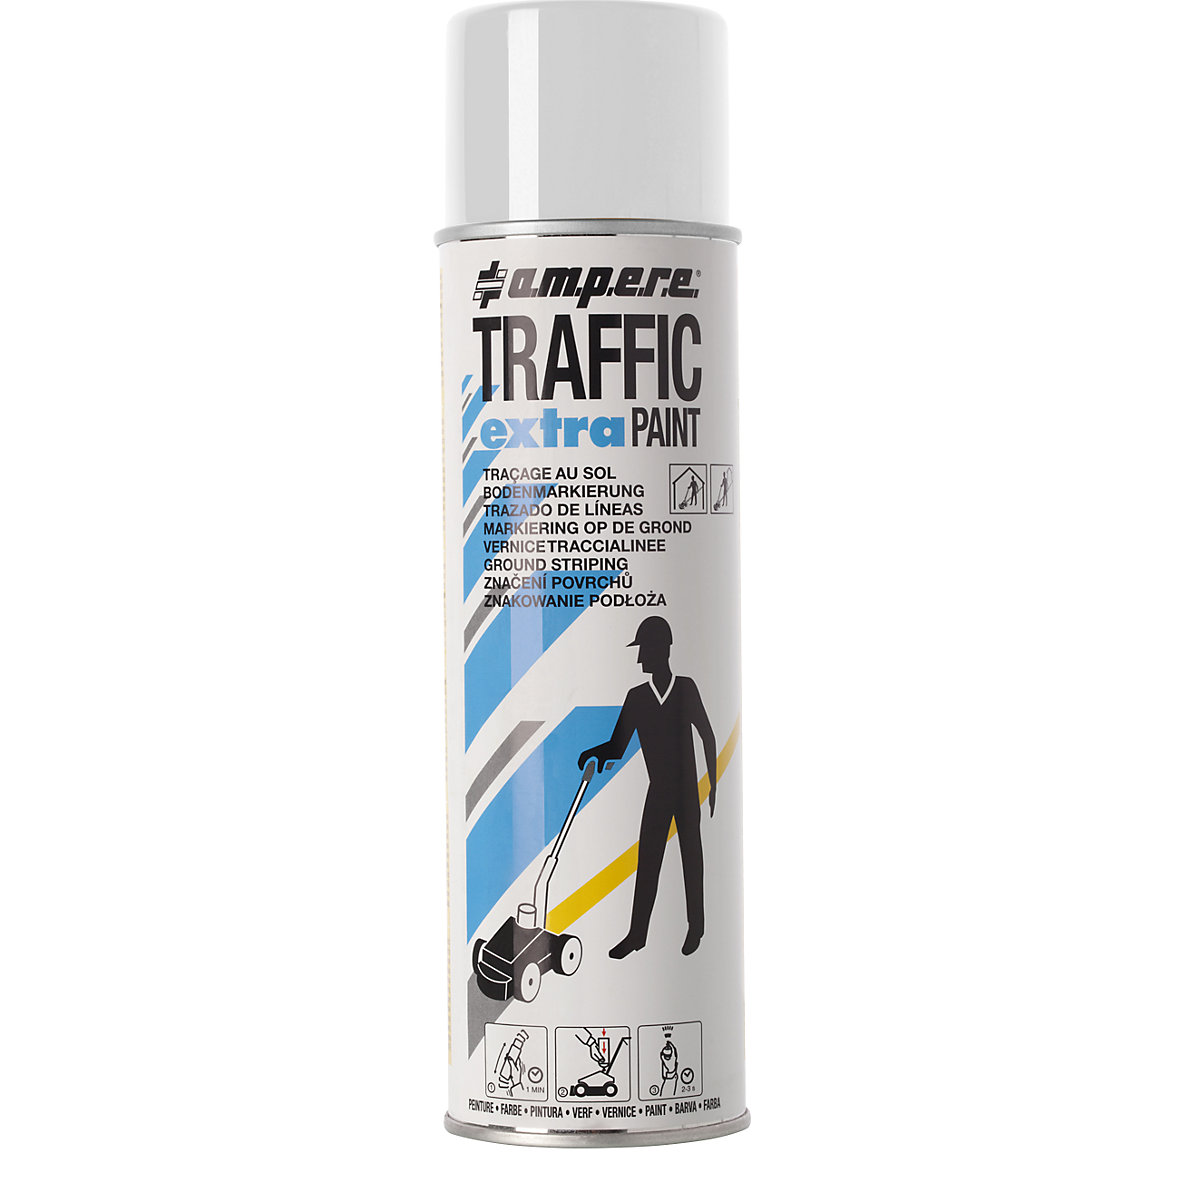 Markeerverf Traffic extra Paint® voor intensief gebruik - Ampere